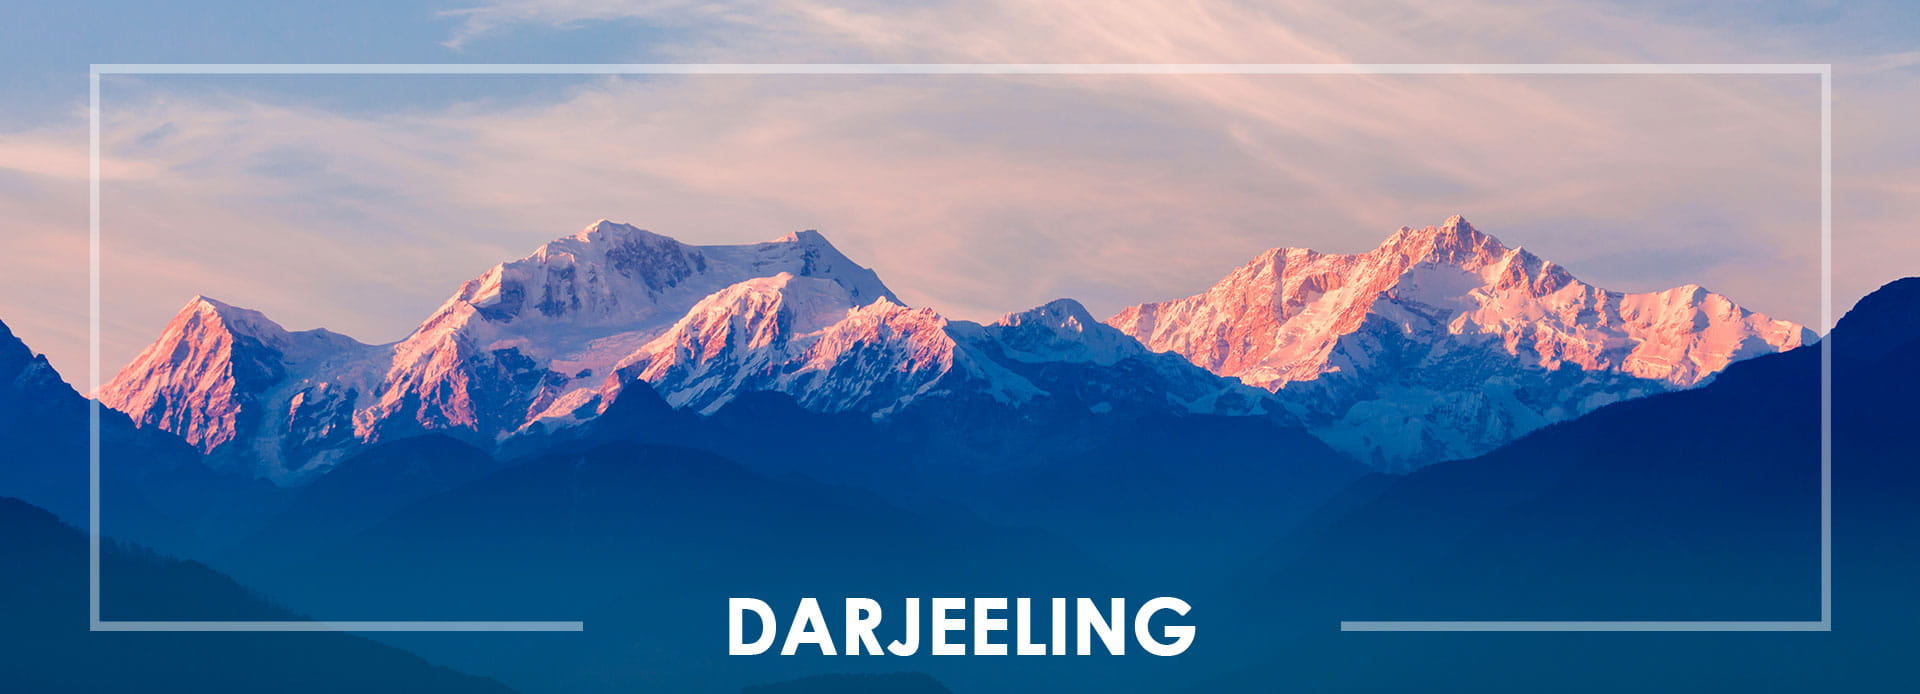  Darjeeling